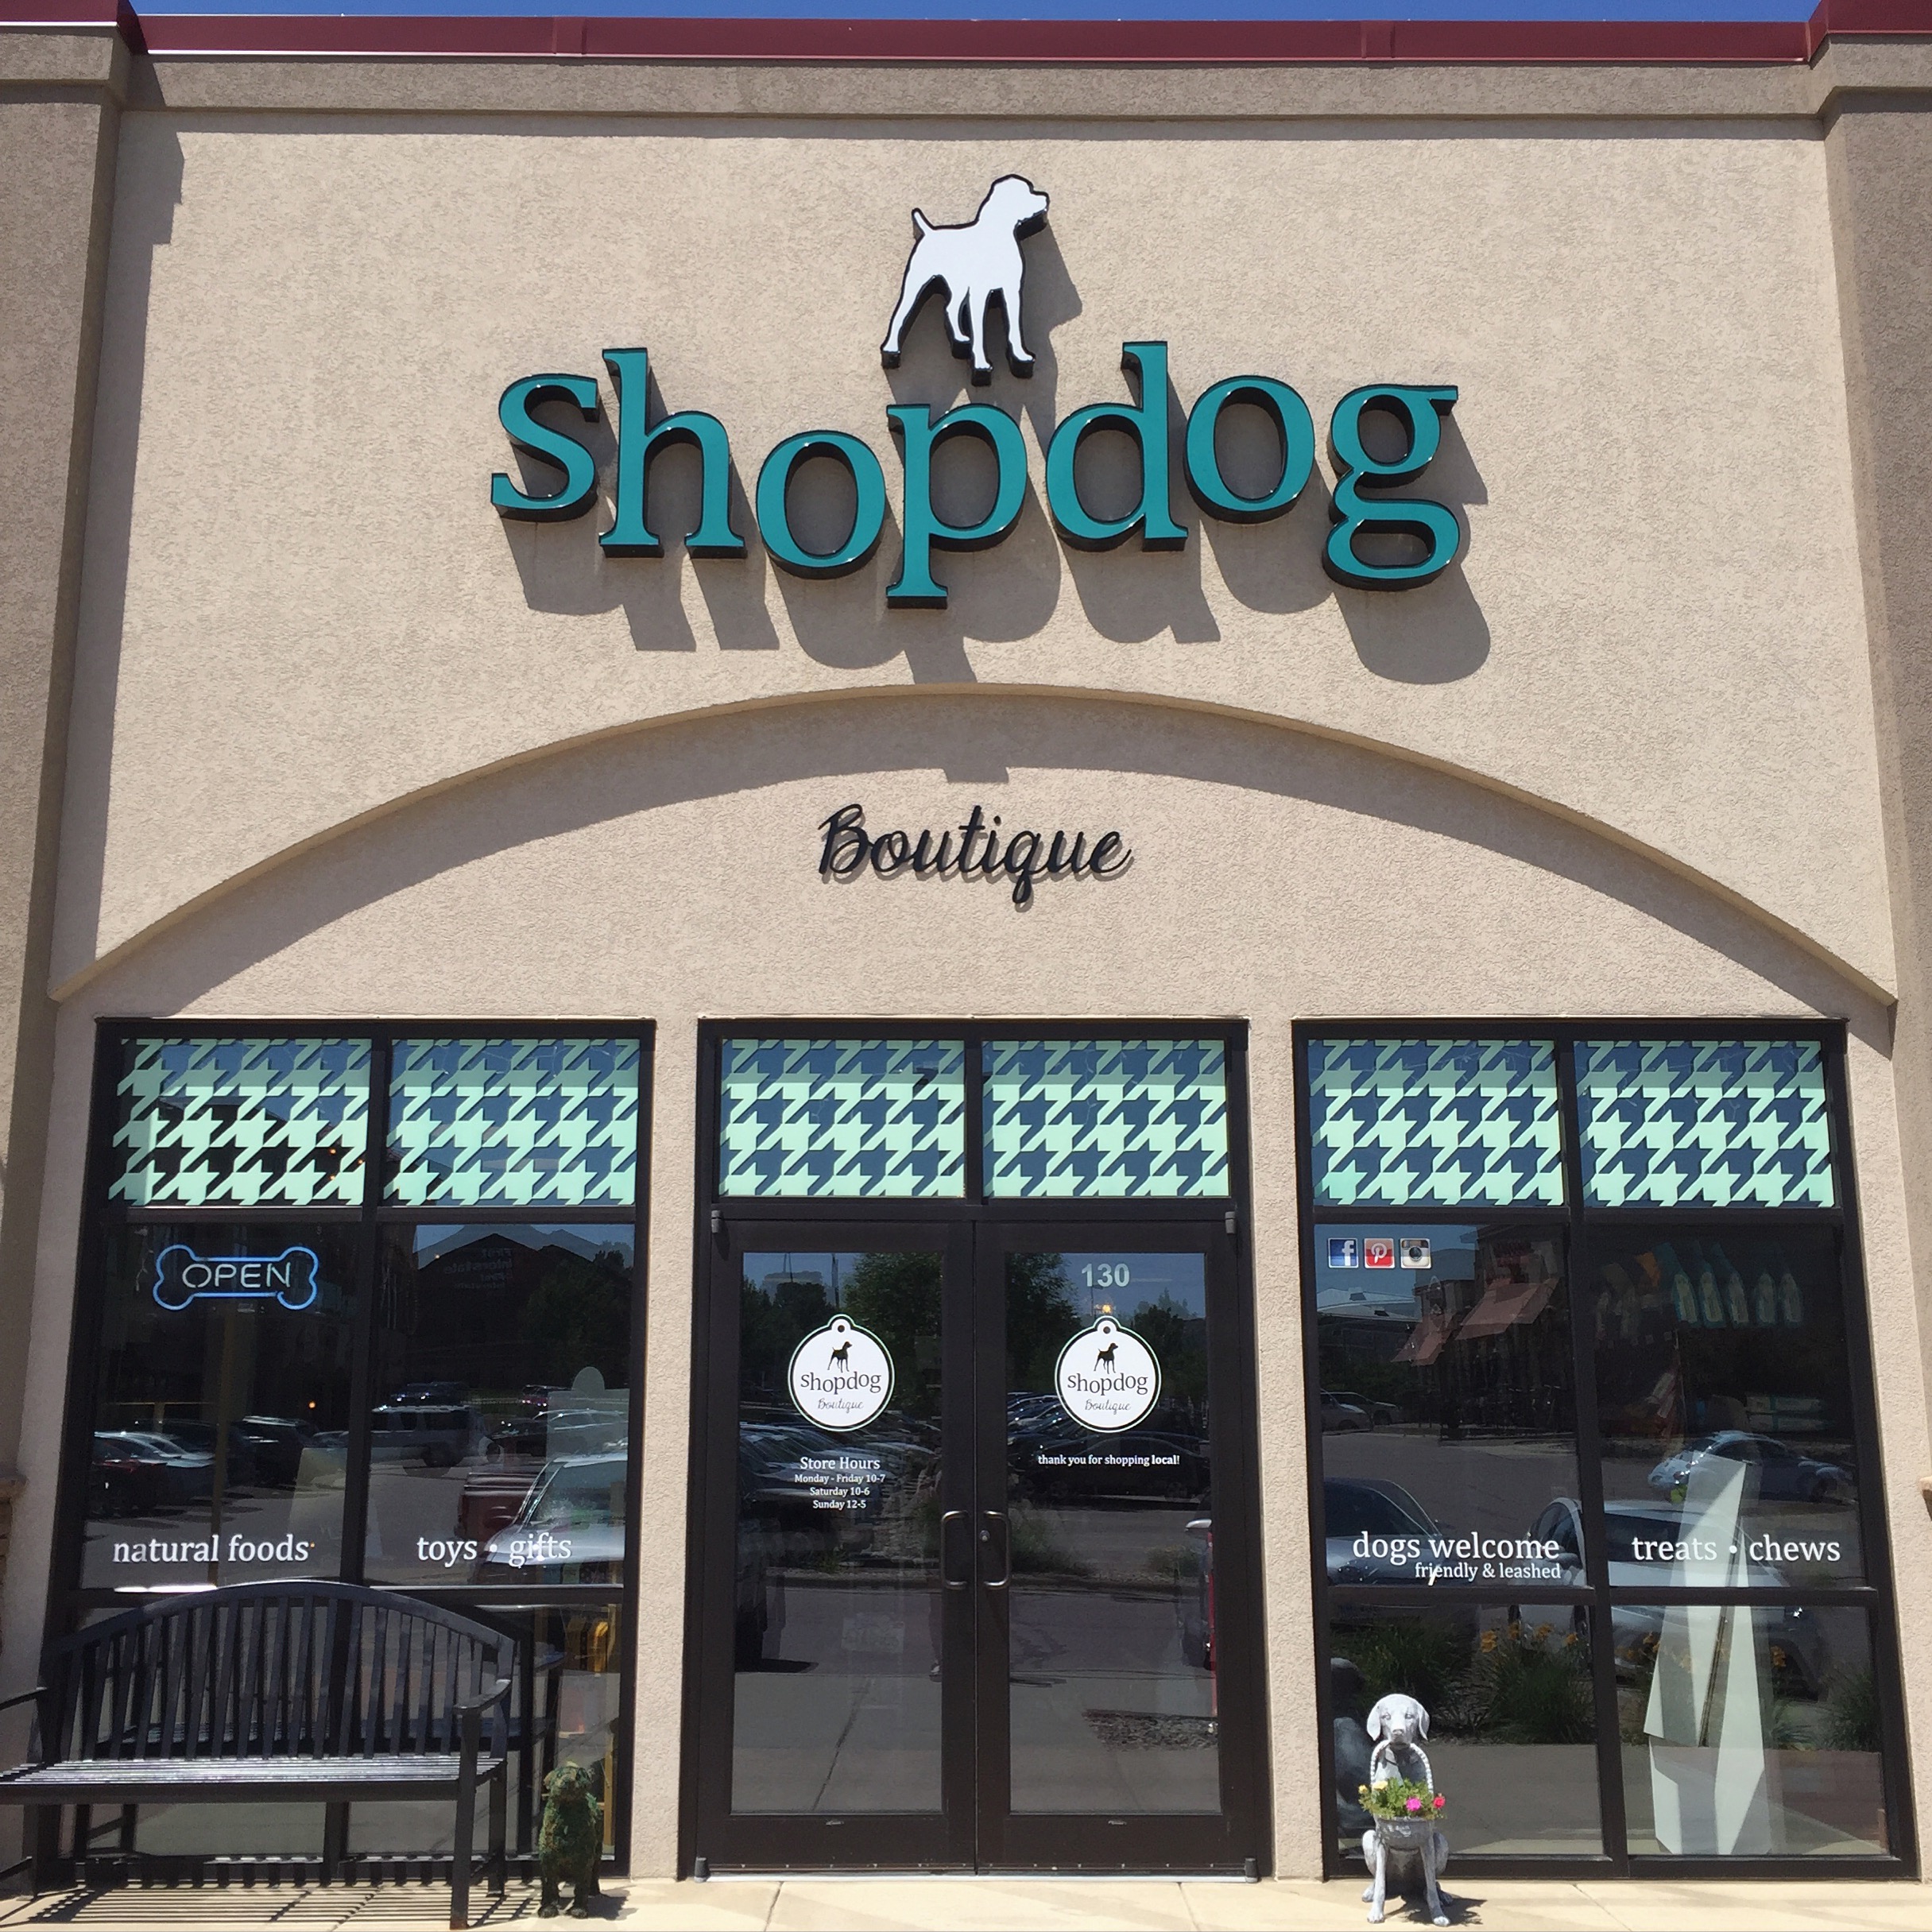 shopdog boutique